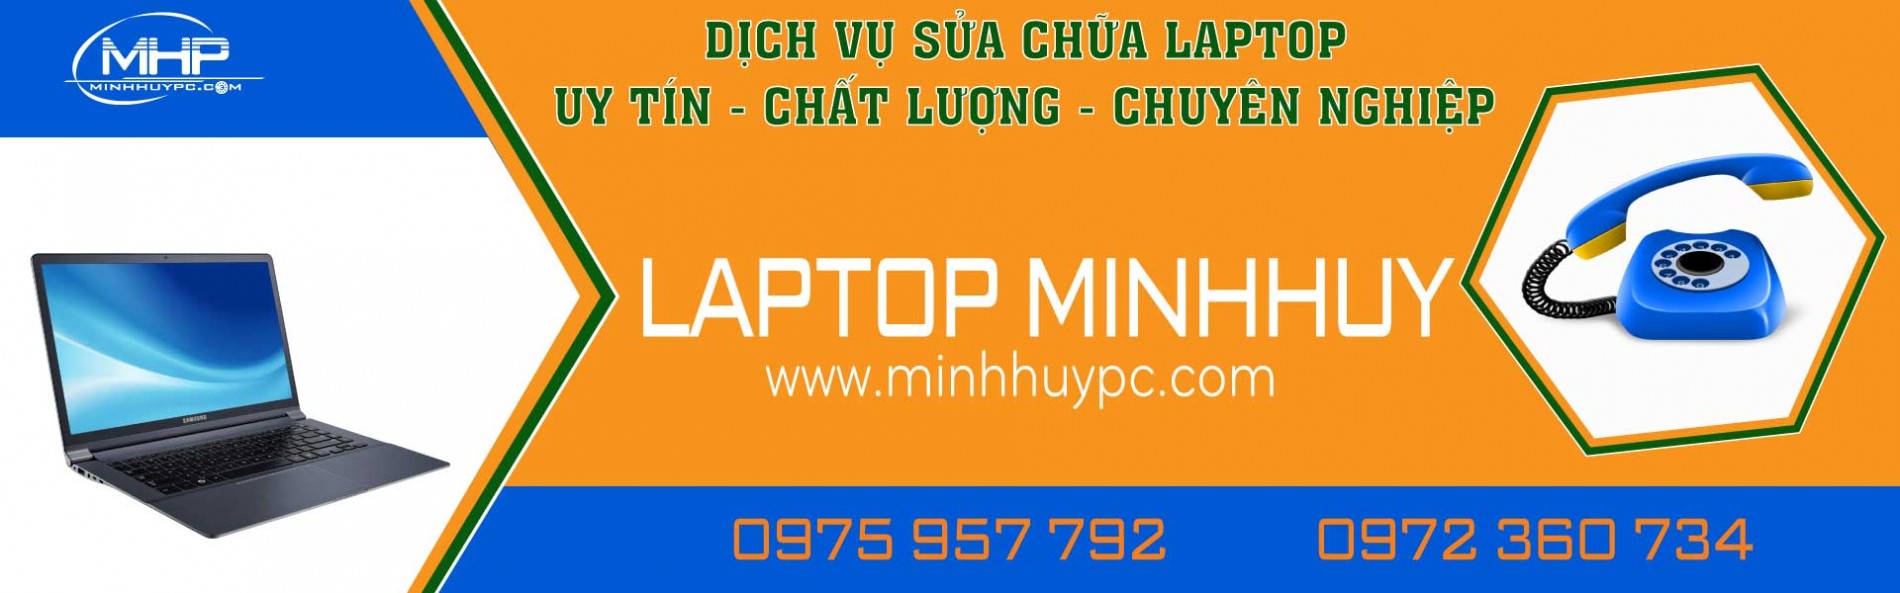 banner-sua-chua-laptop